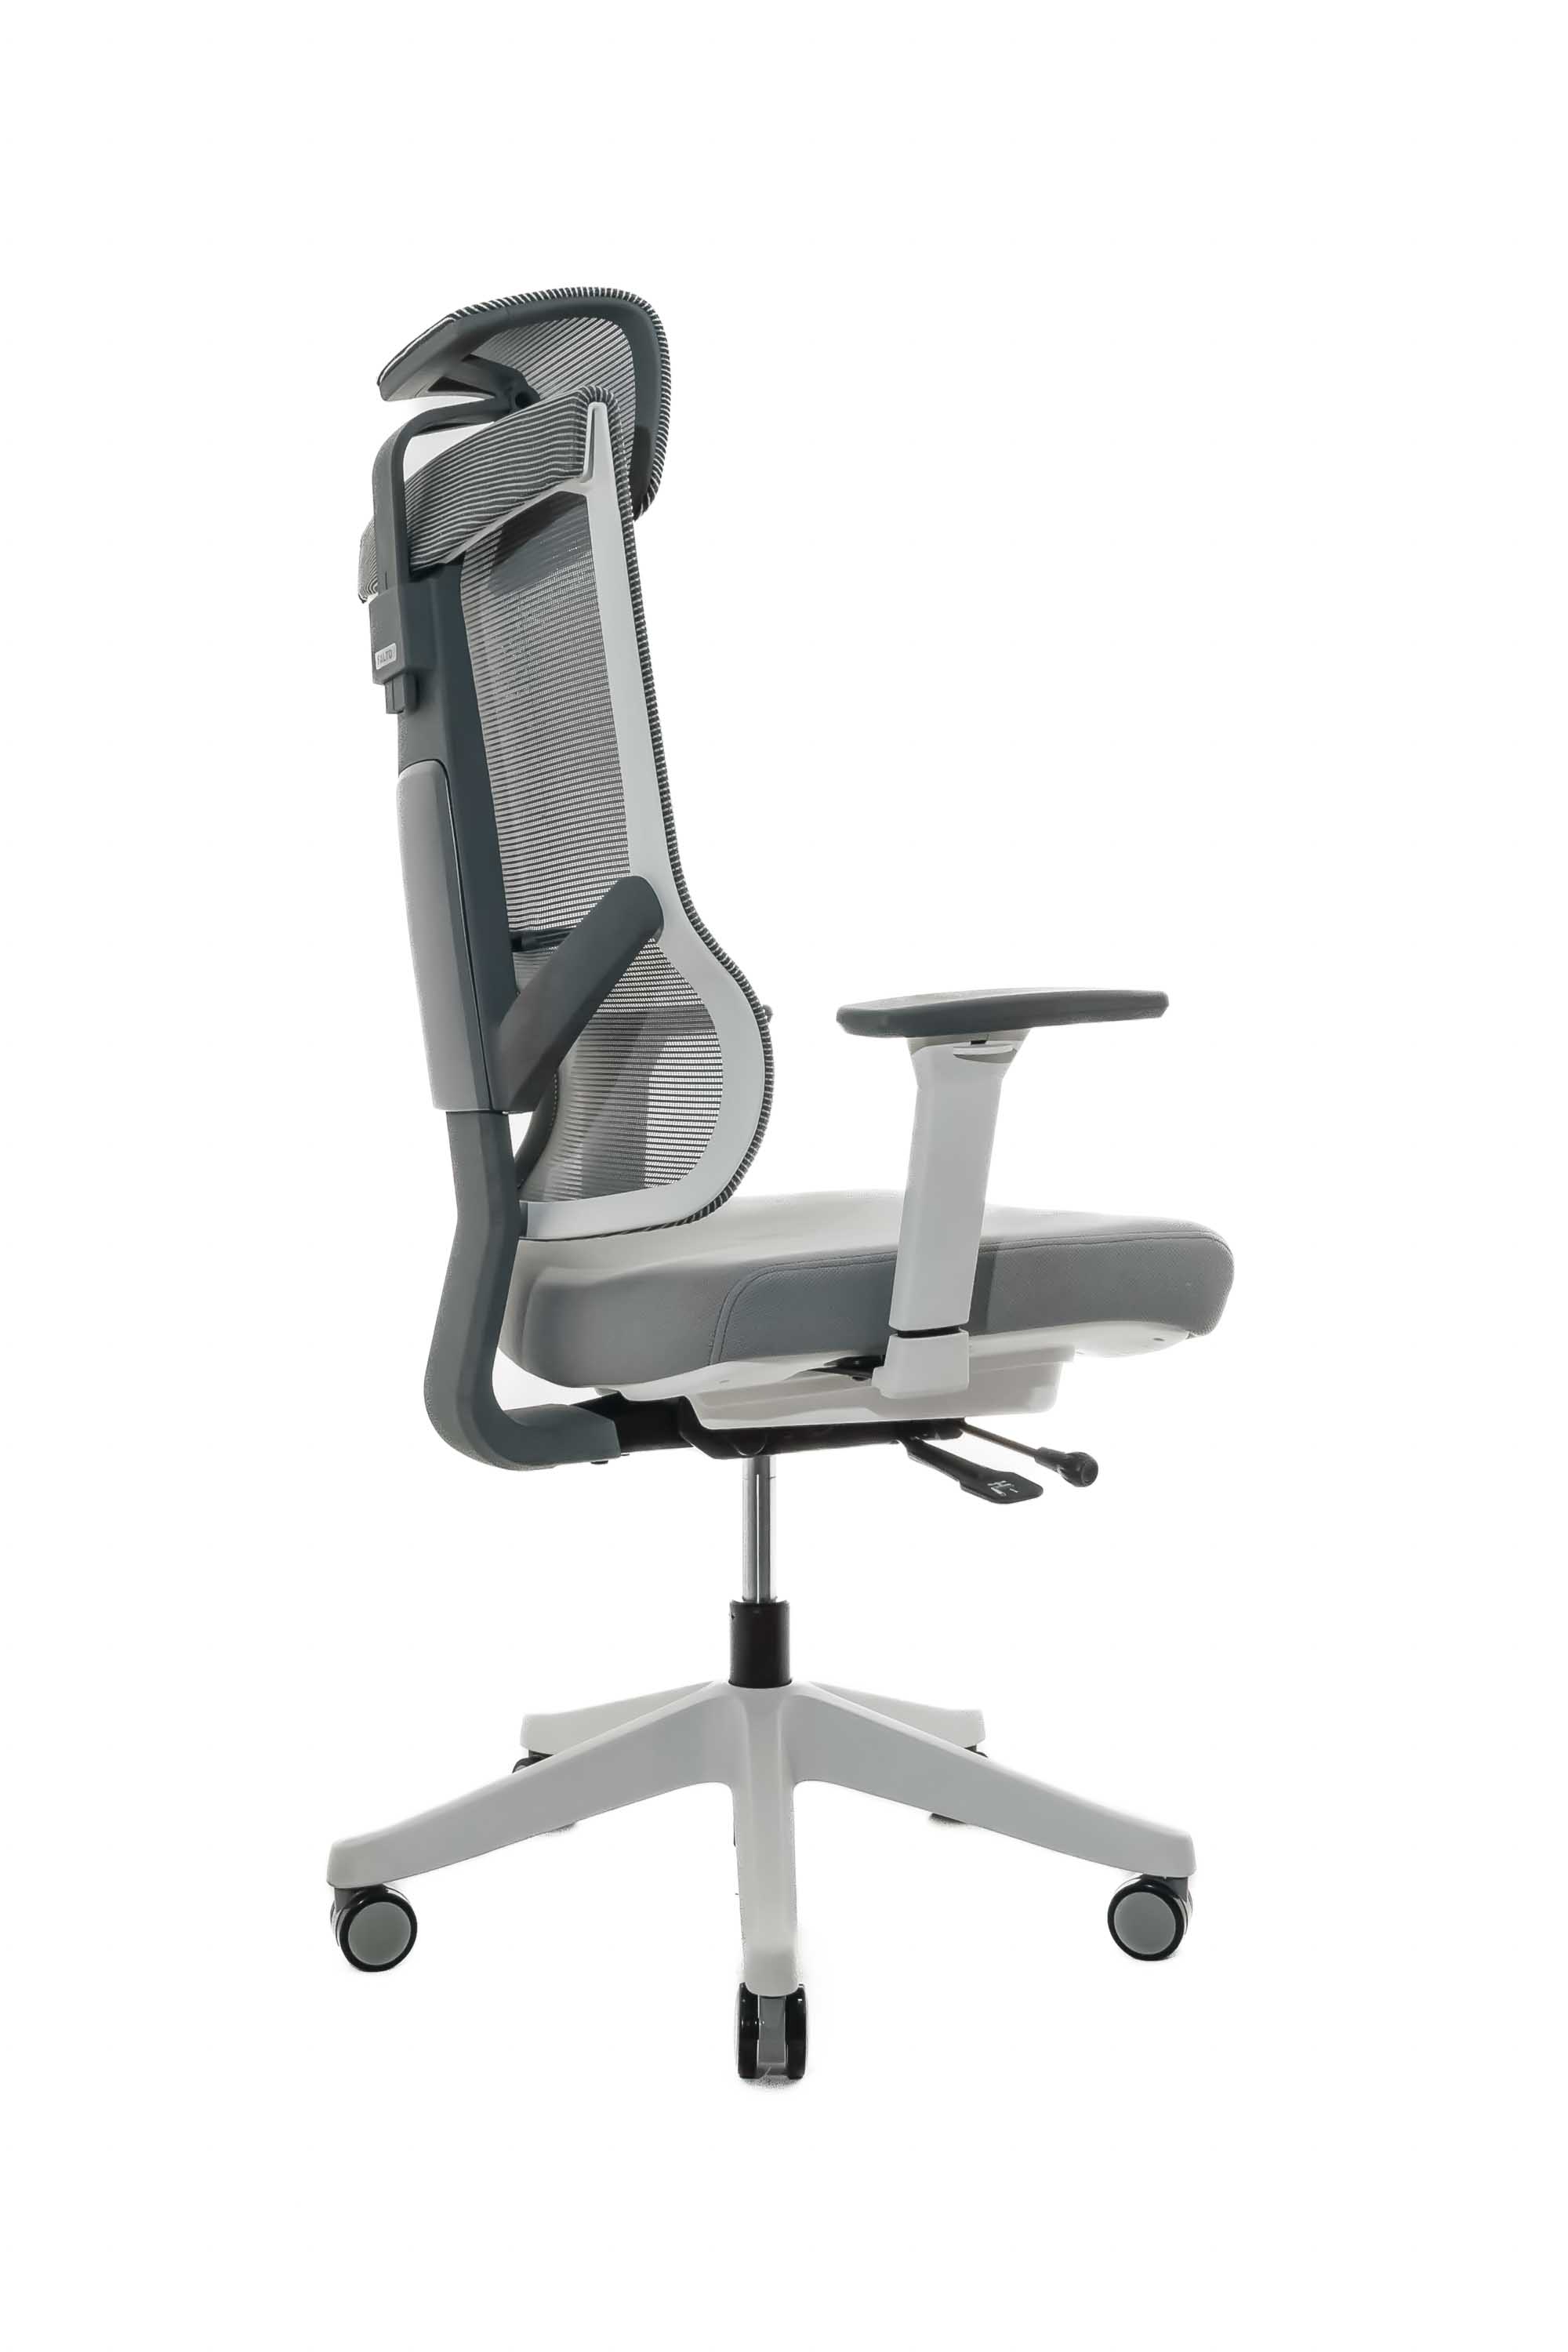 Эргономичное кресло Falto HOSHI Fabric (каркас белый, сидение ткань WT-855 серый, сетка KW-03 серый)